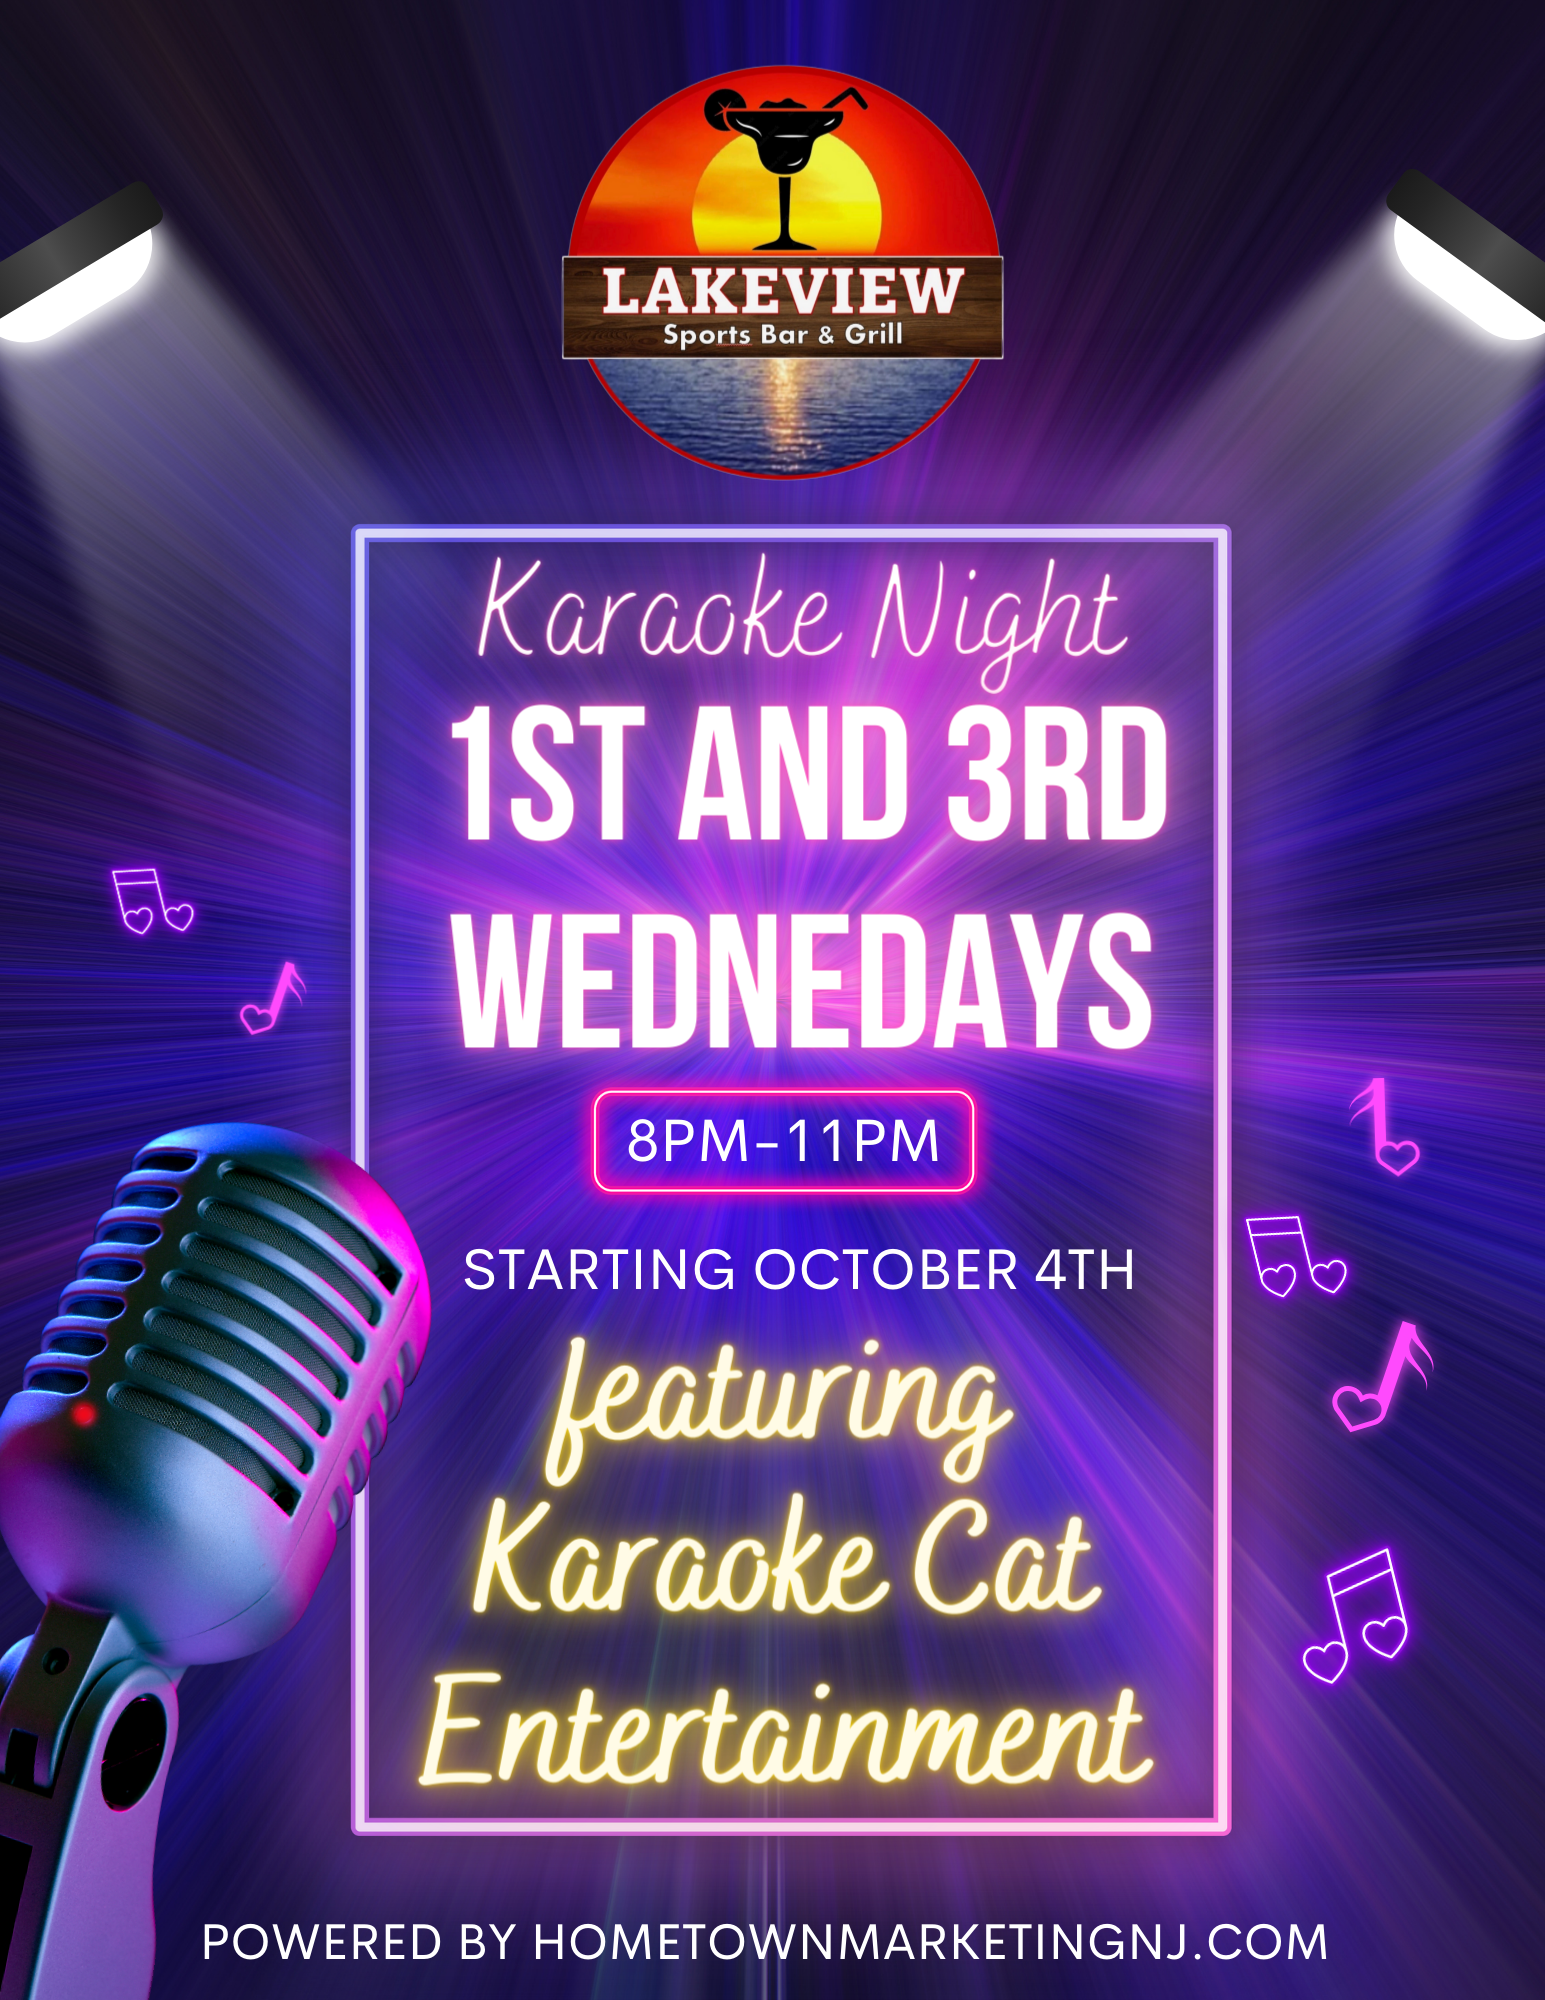 Lakeview Karaoke